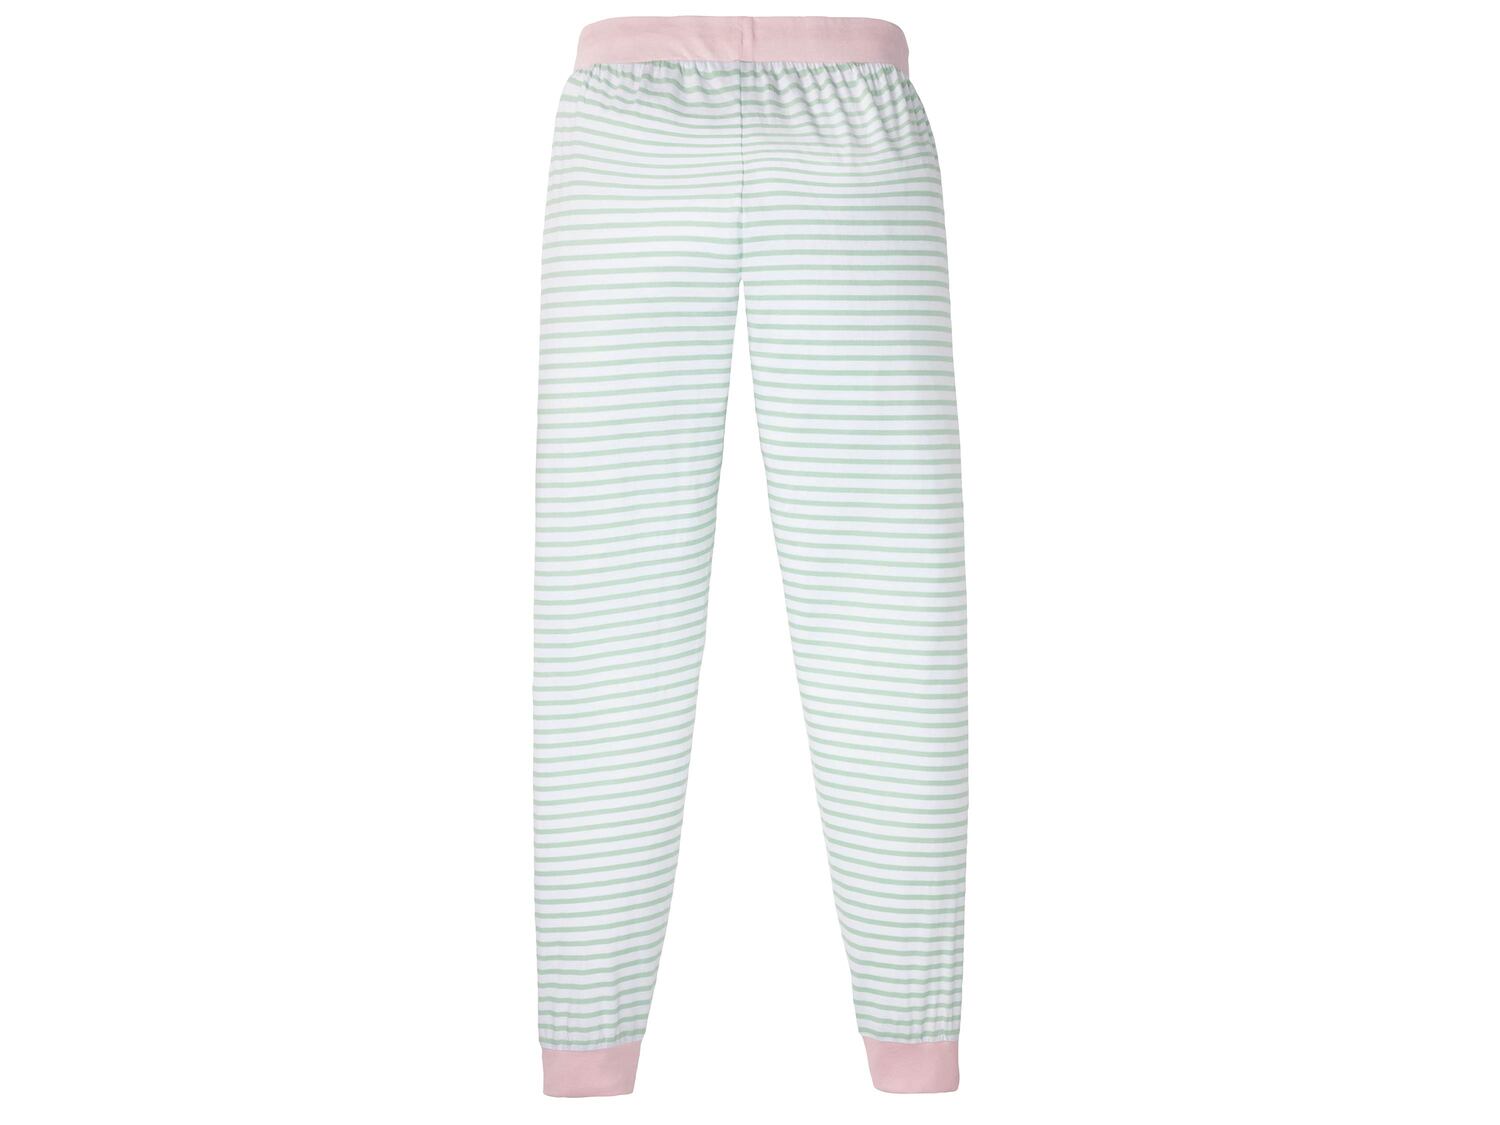 Spodnie do spania damskie Esmara Lingerie, cena 21,99 PLN 
- rozmiary: S-L
- 100% ...